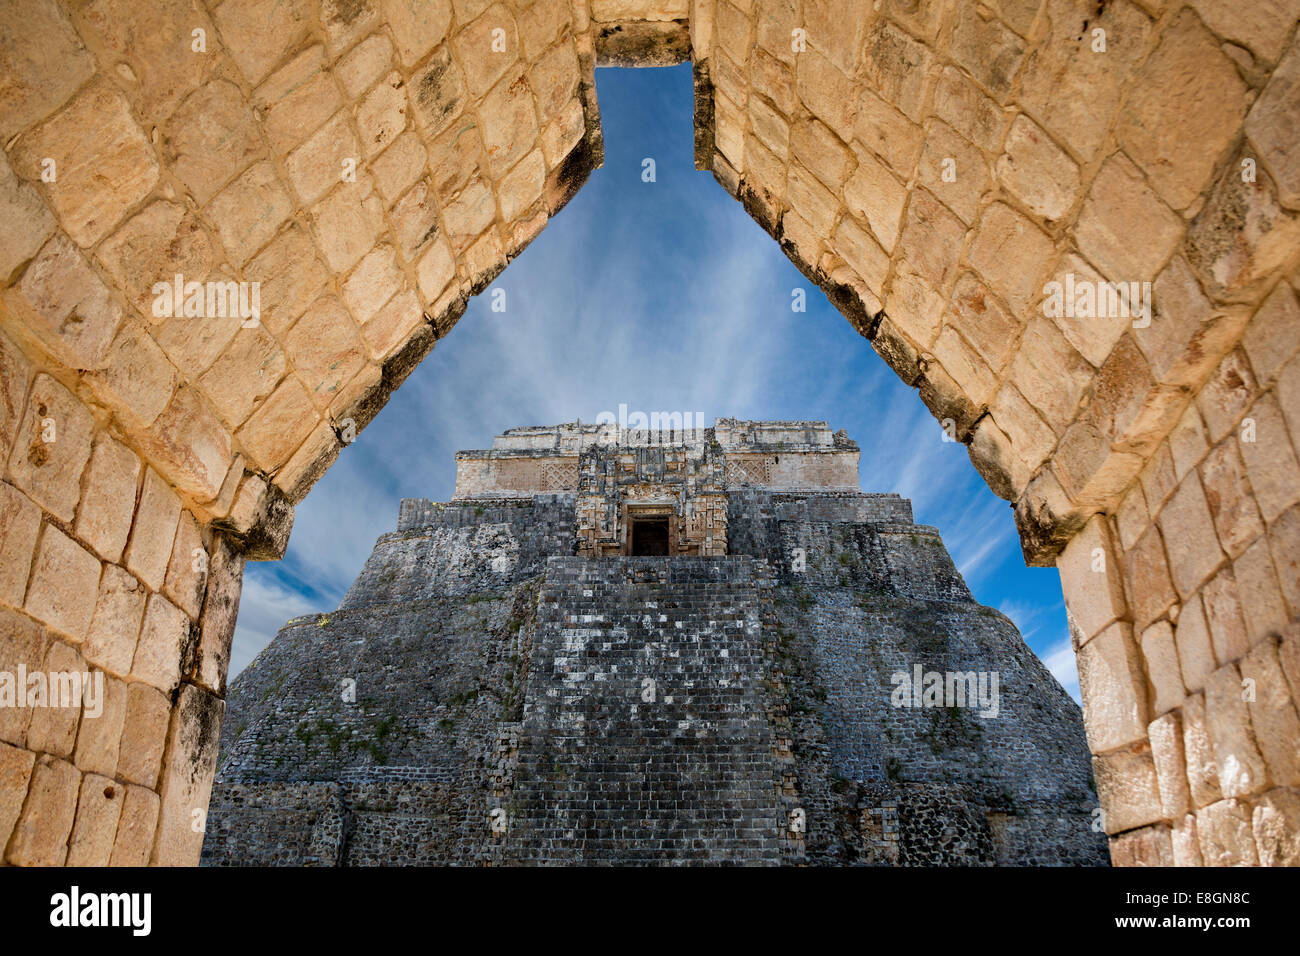 The pyramid of the magician, Uxmal, Yucatan, Mexico (seen through an arch) Stock Photo